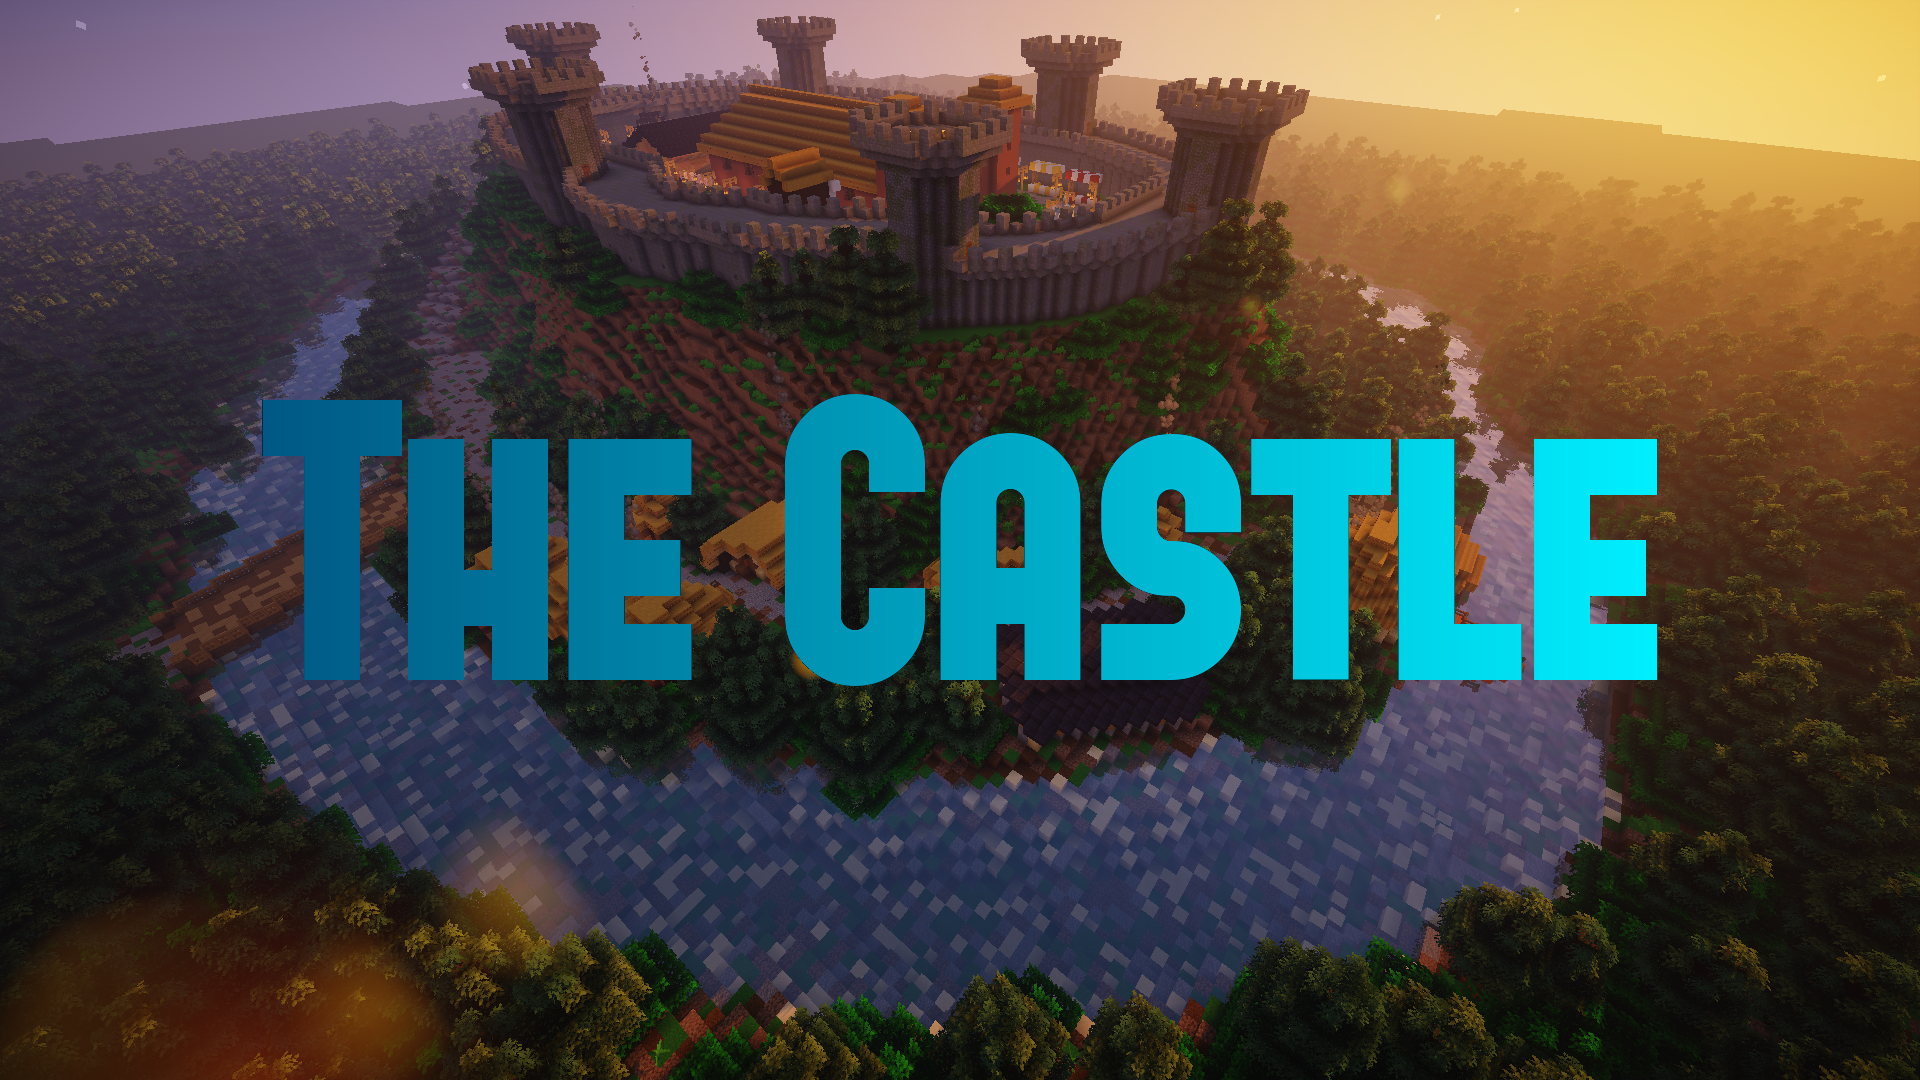 İndir The Castle için Minecraft 1.16.4